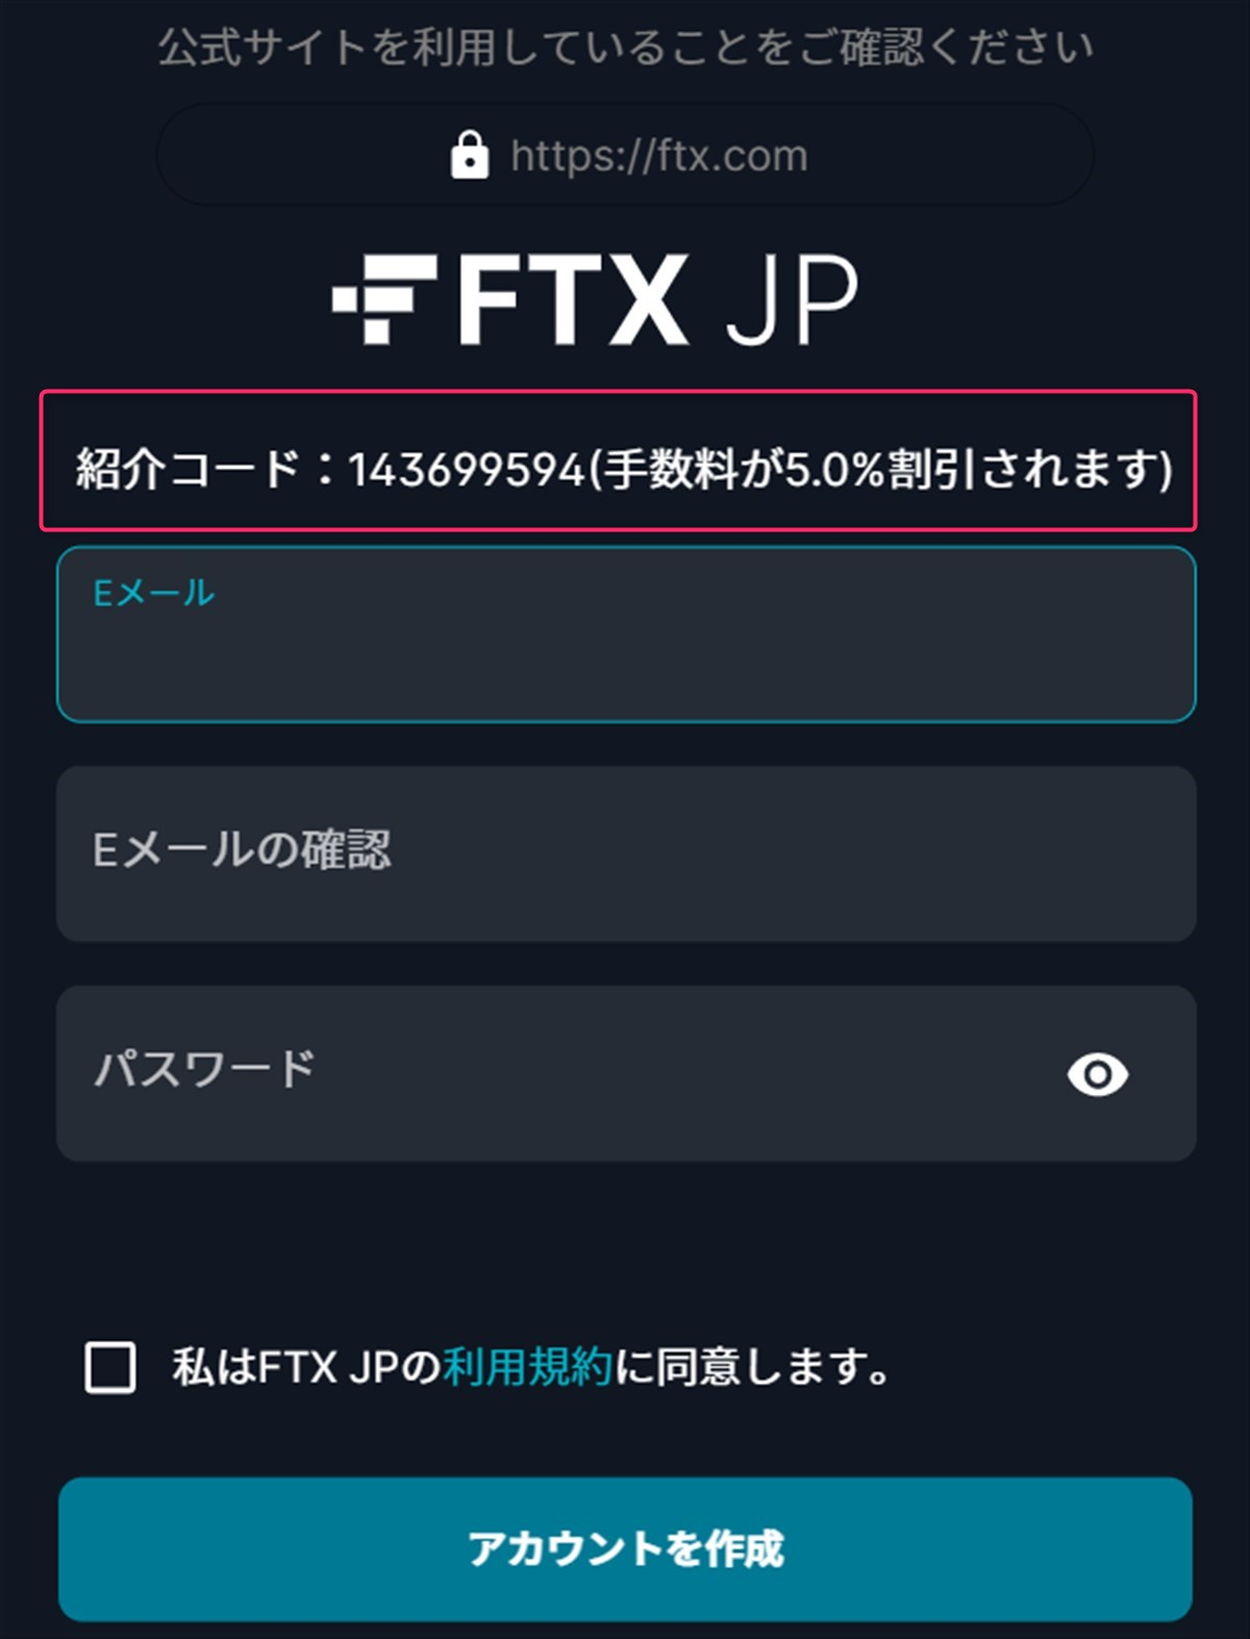 FTX JPの口座開設で紹介コード適用状態